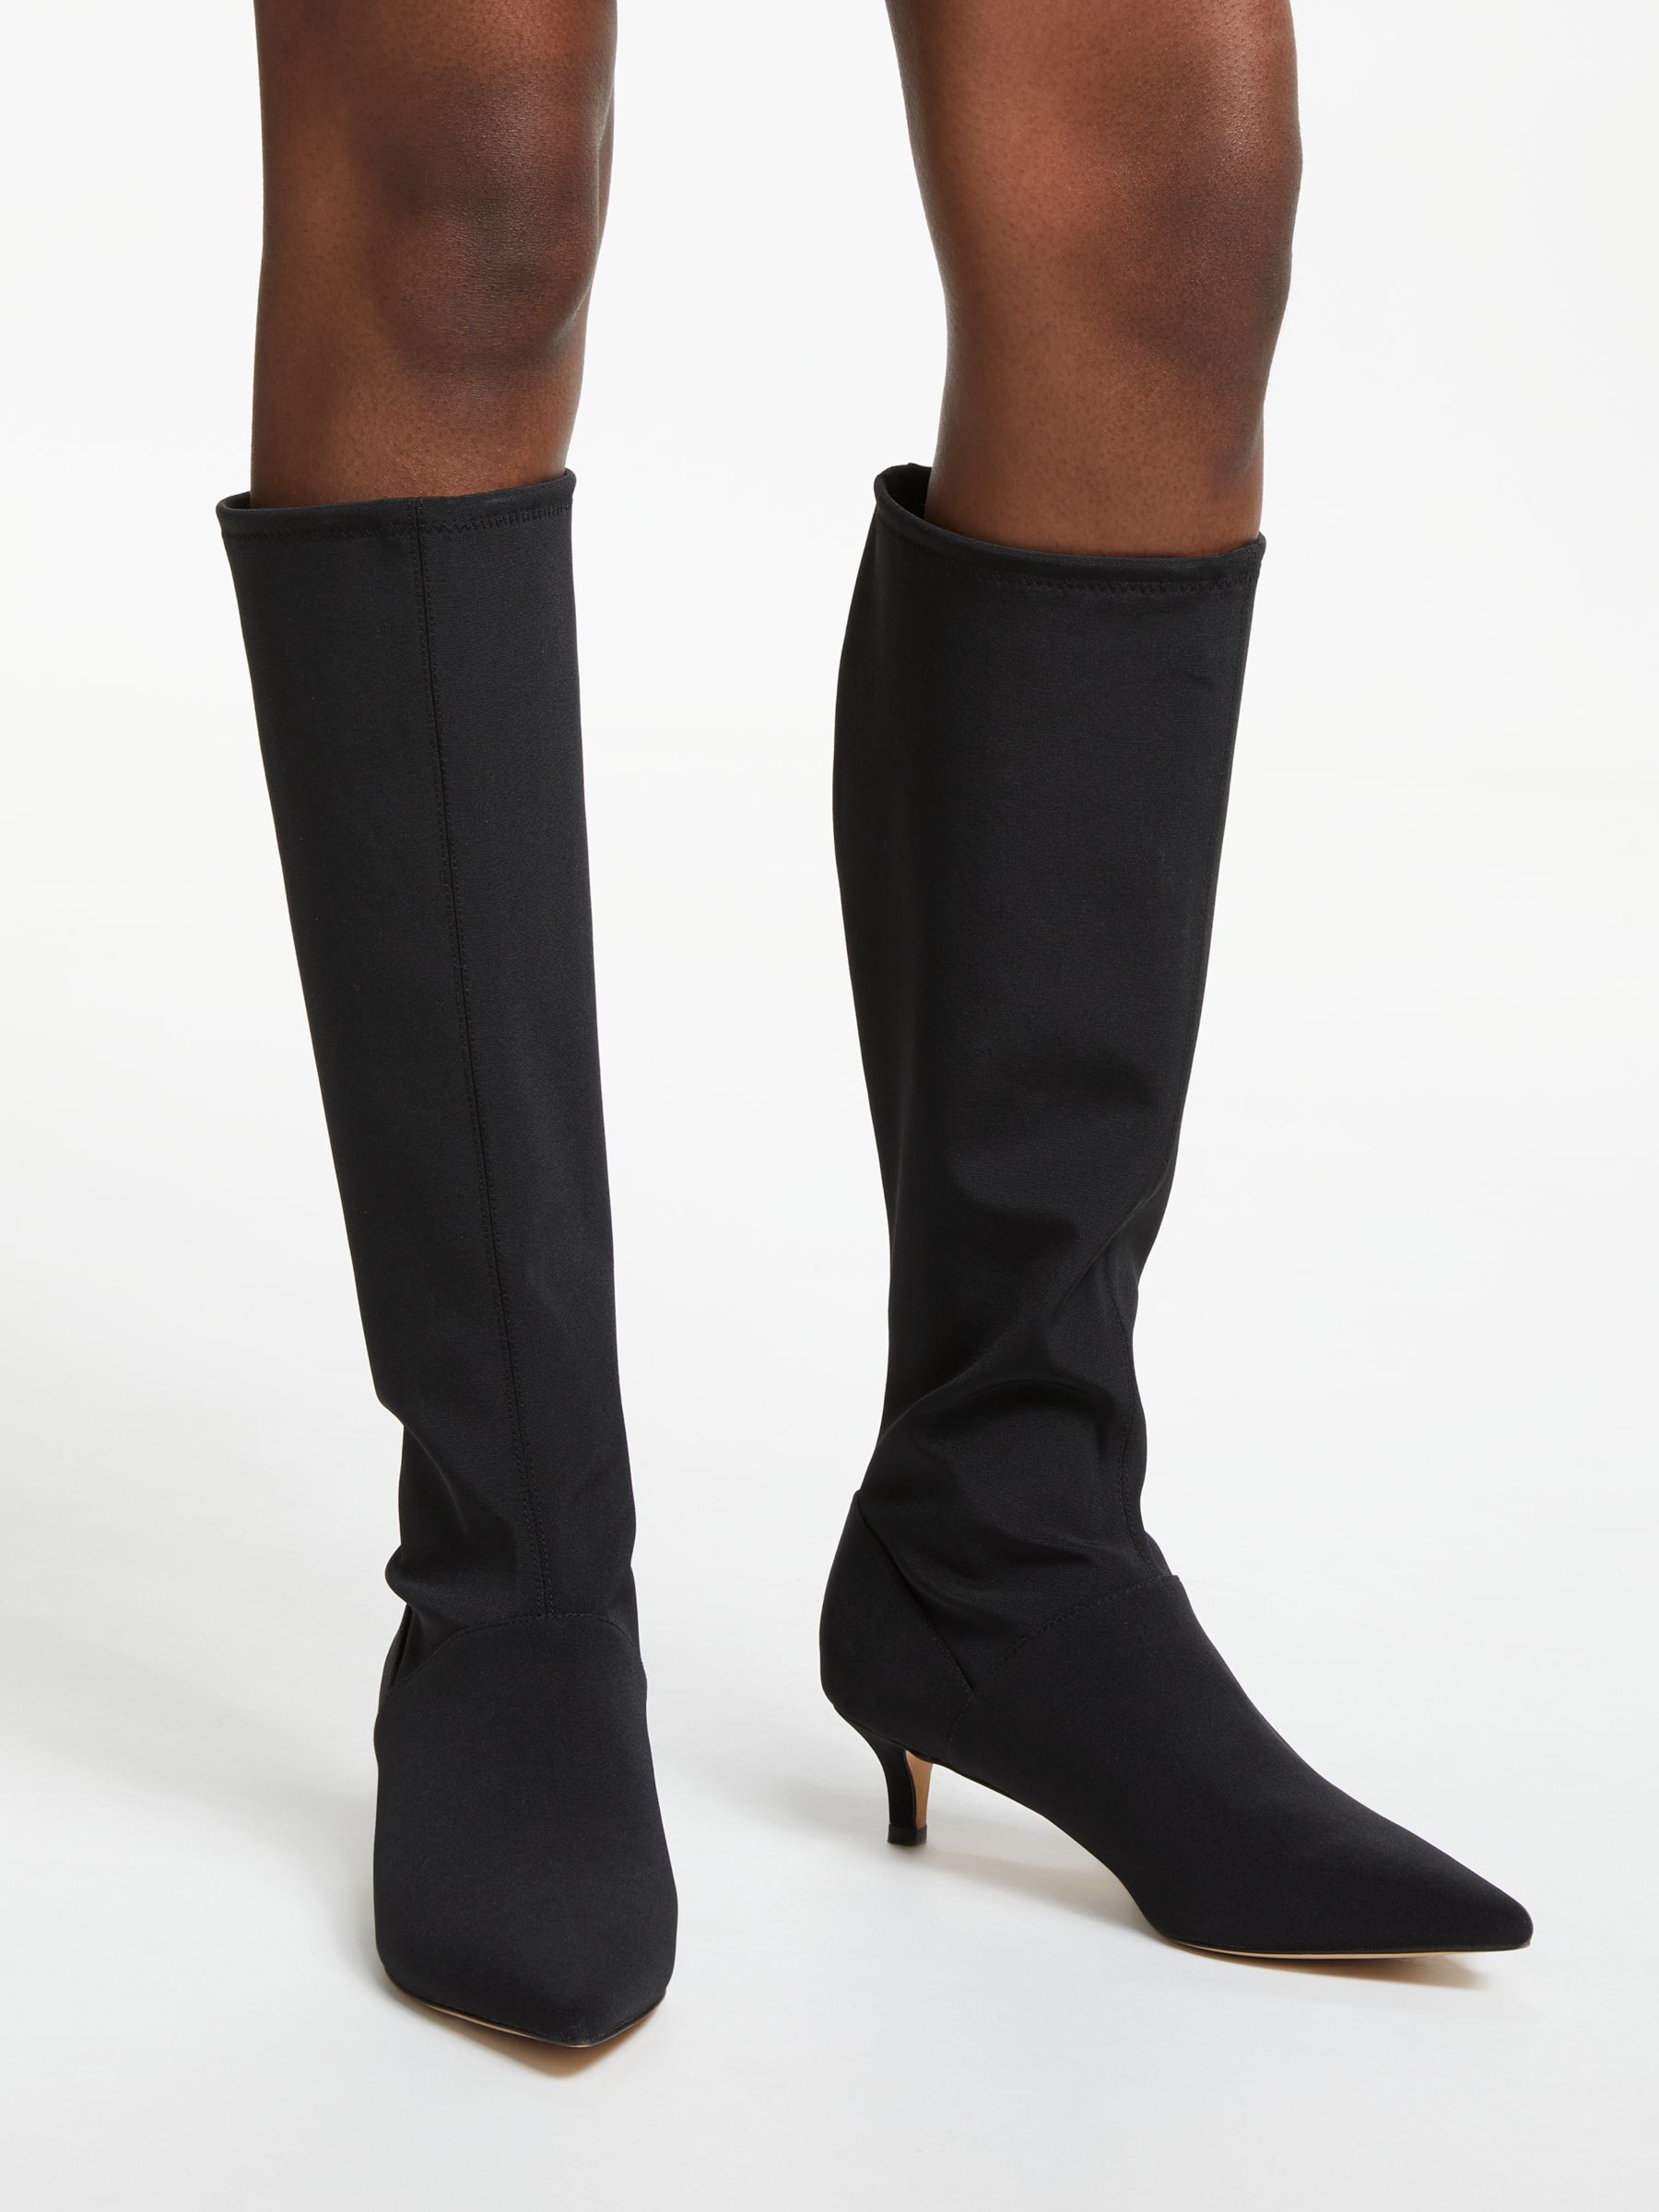 black knee high boots with kitten heel